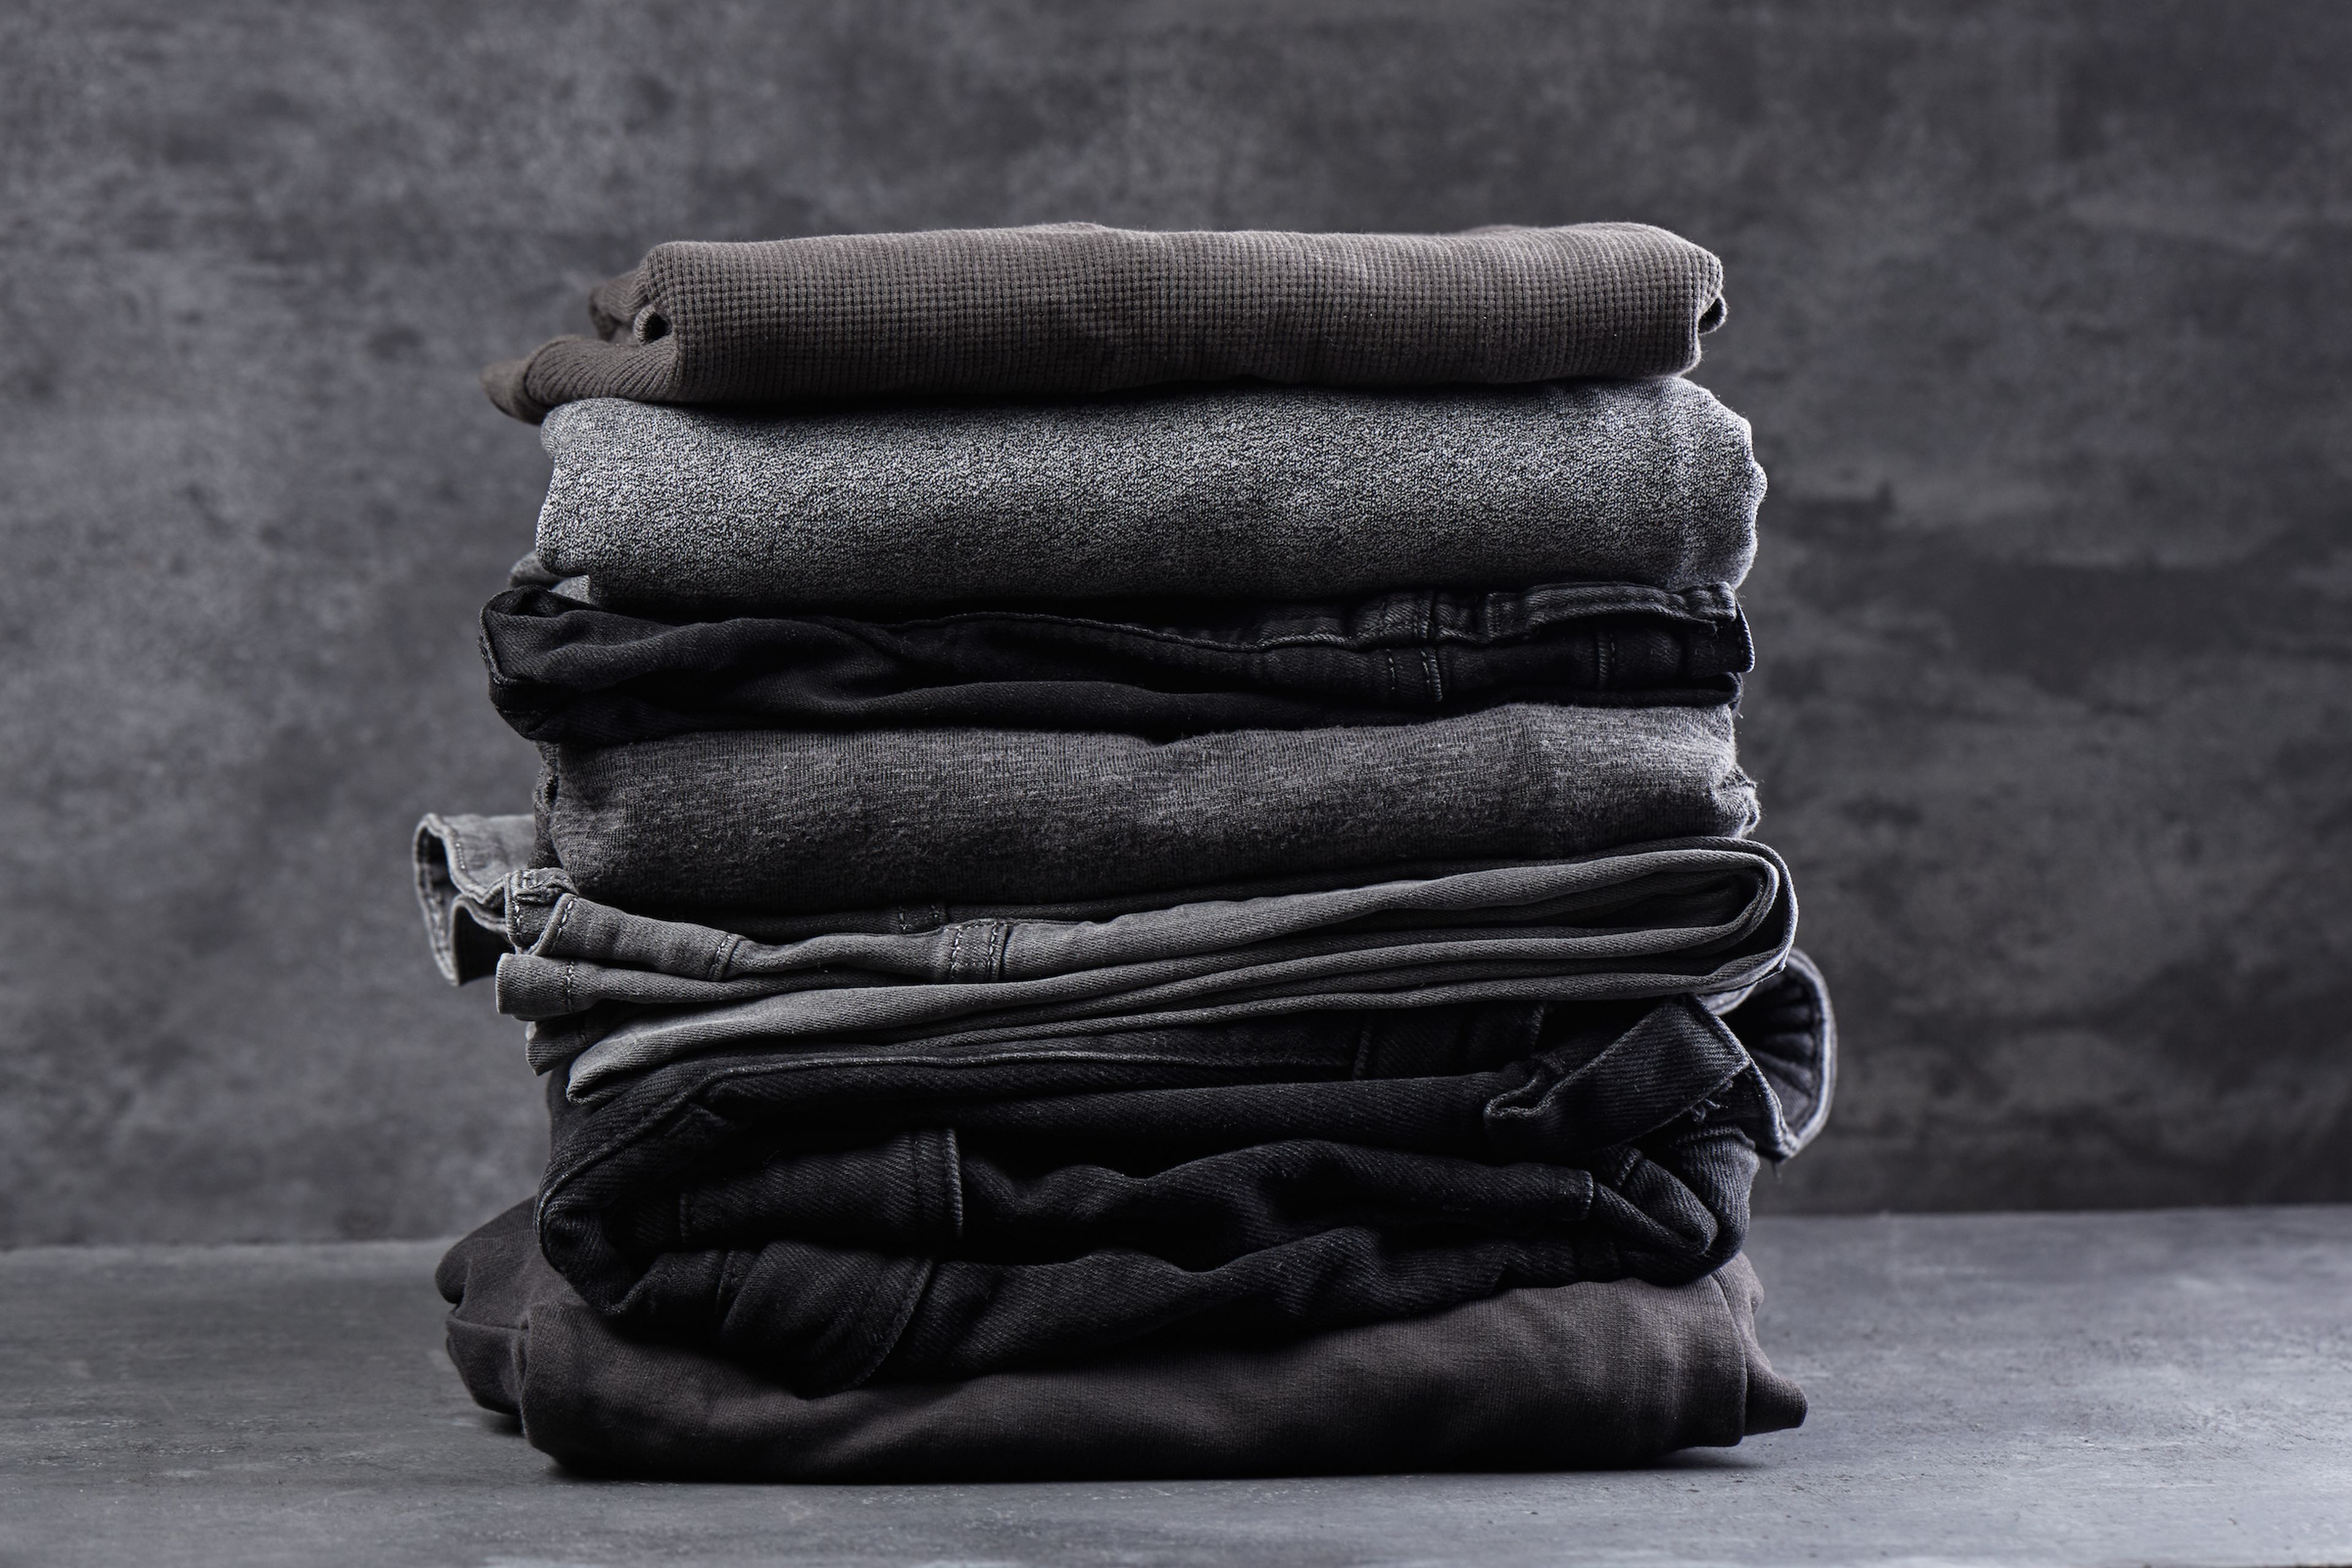 Cómo lavar la ropa negra u oscura: trucos para conservar color y que no se destiña | Computer Hoy